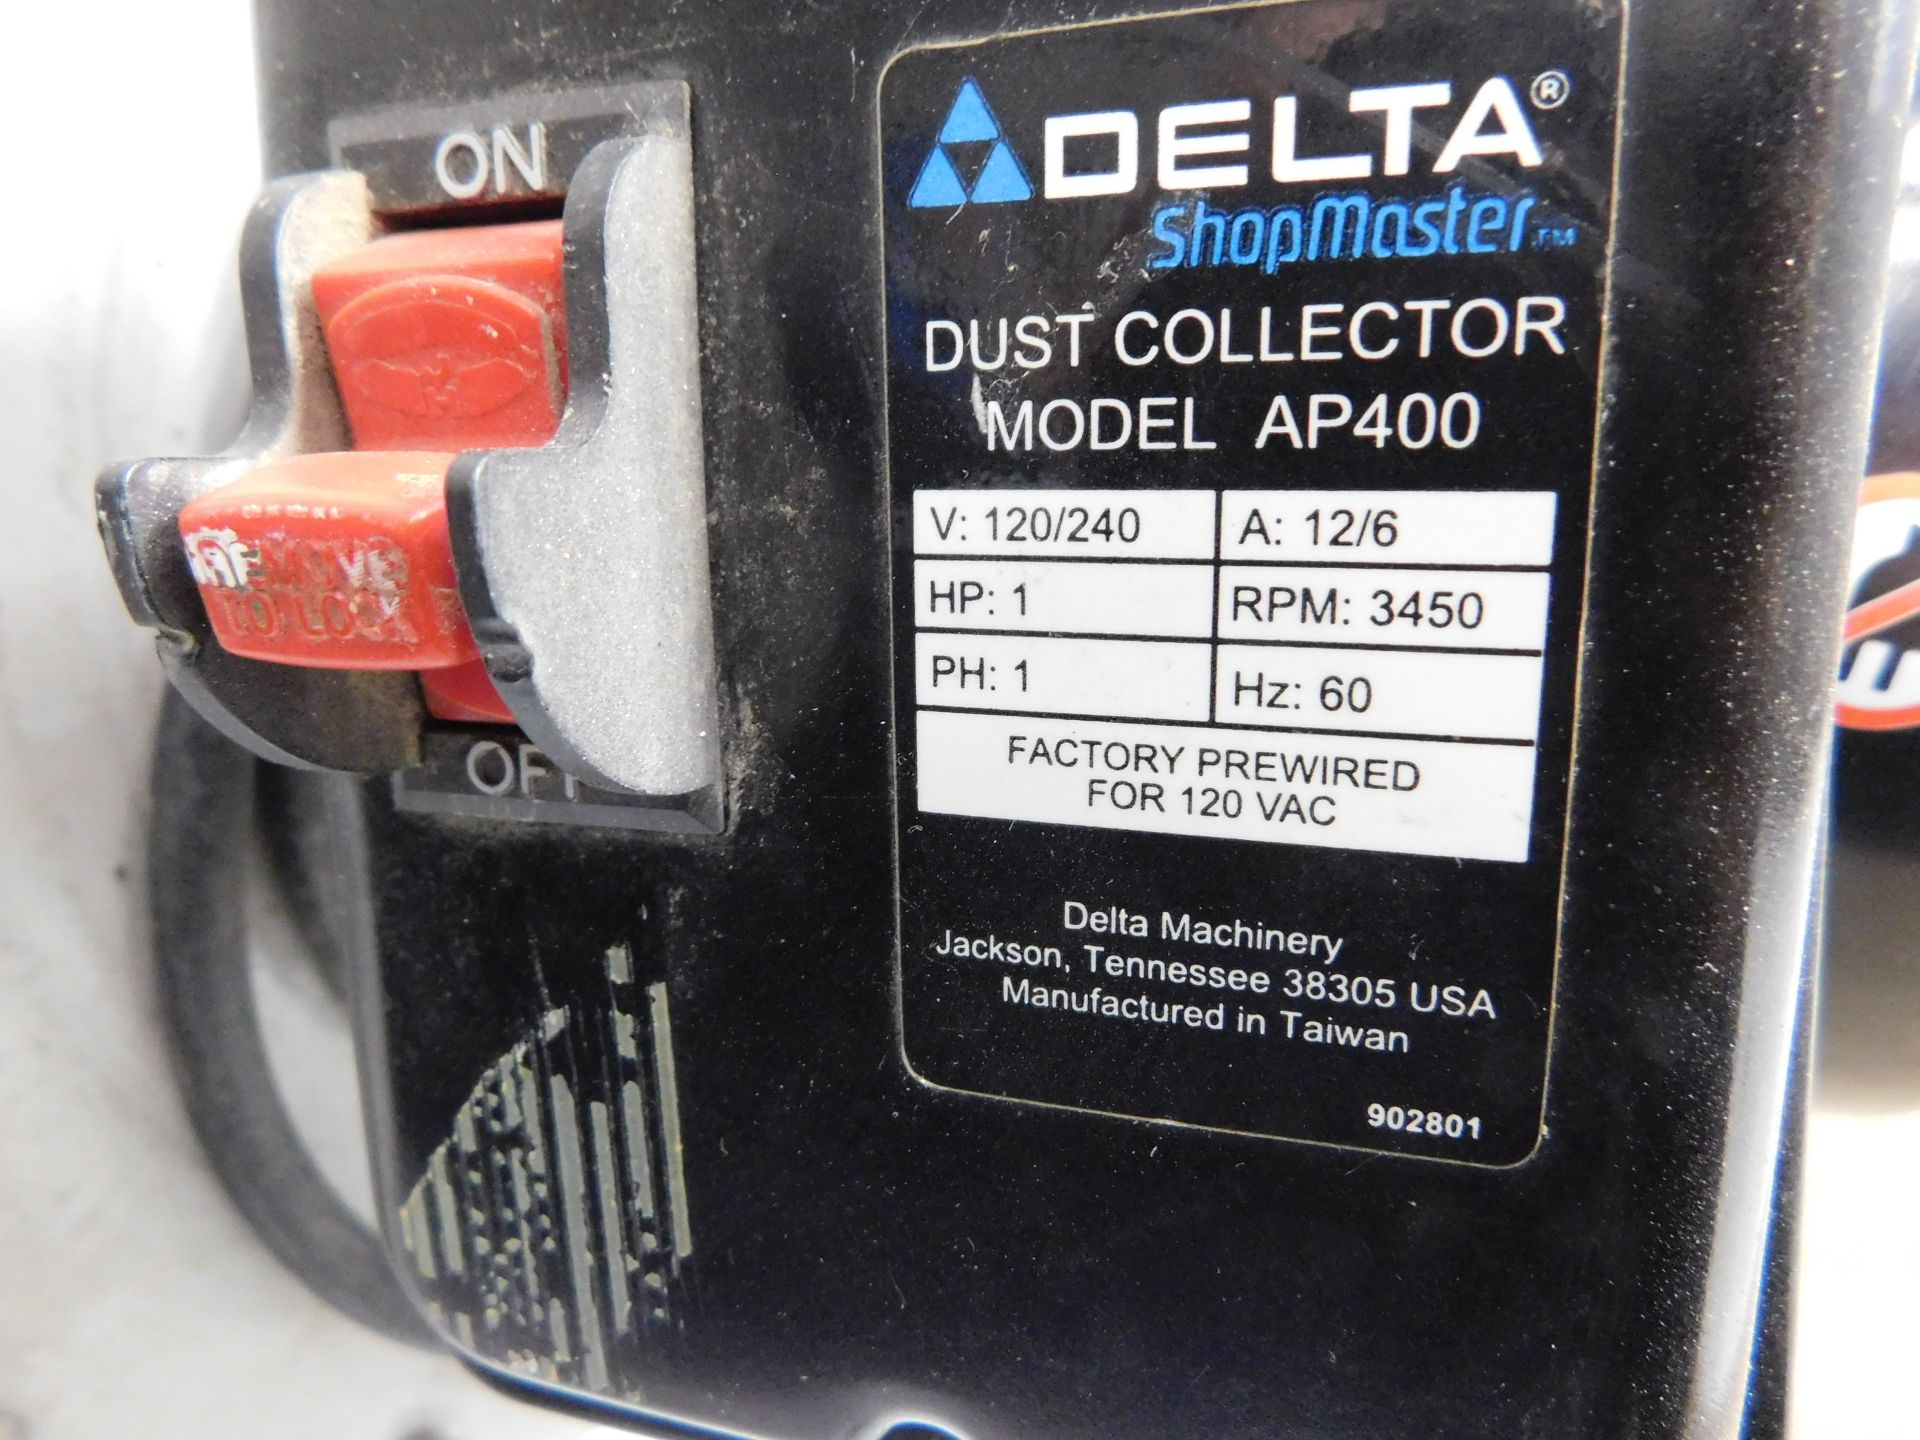 Delta Shopmaster Dust Collector AP400 - Bild 5 aus 6